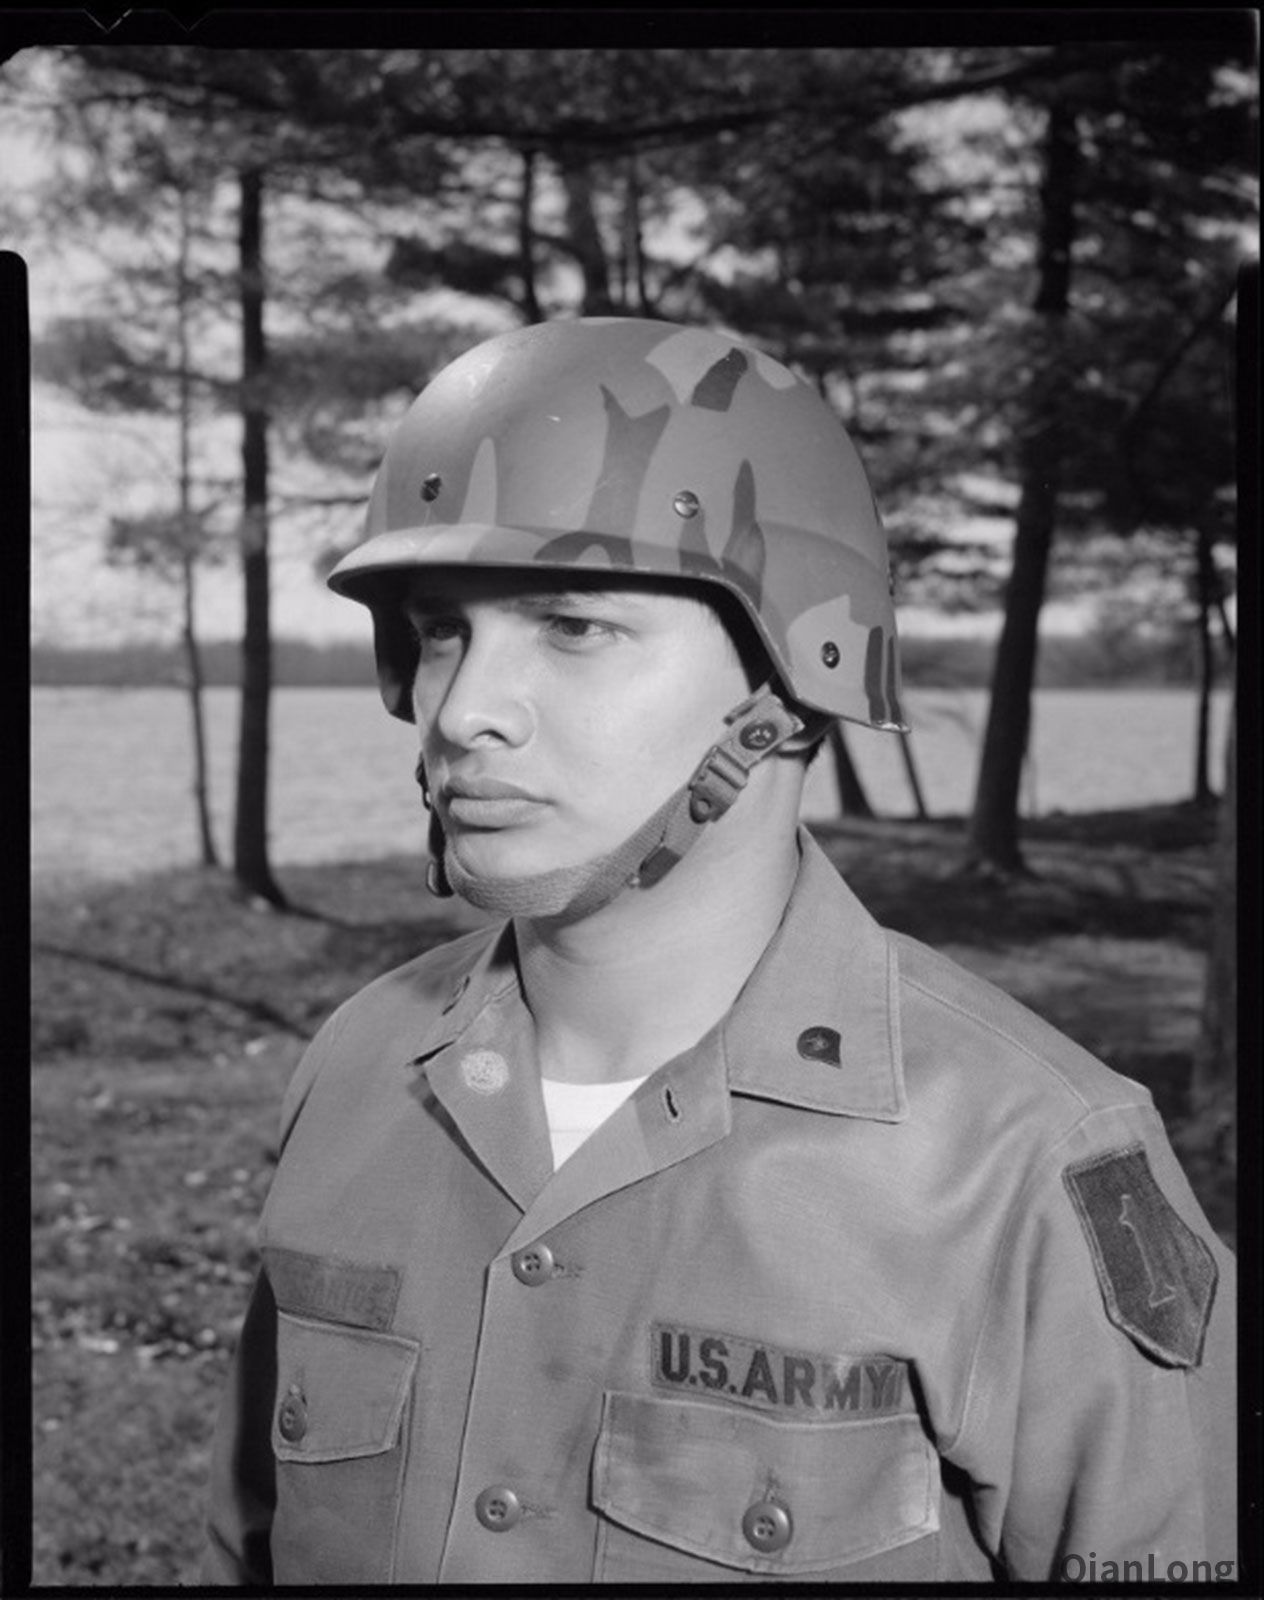 02.除了美军外，美国境内的SWAT小组也装备了大量的PASGT头盔，甚至联合国维和部队也采用了该型头盔。